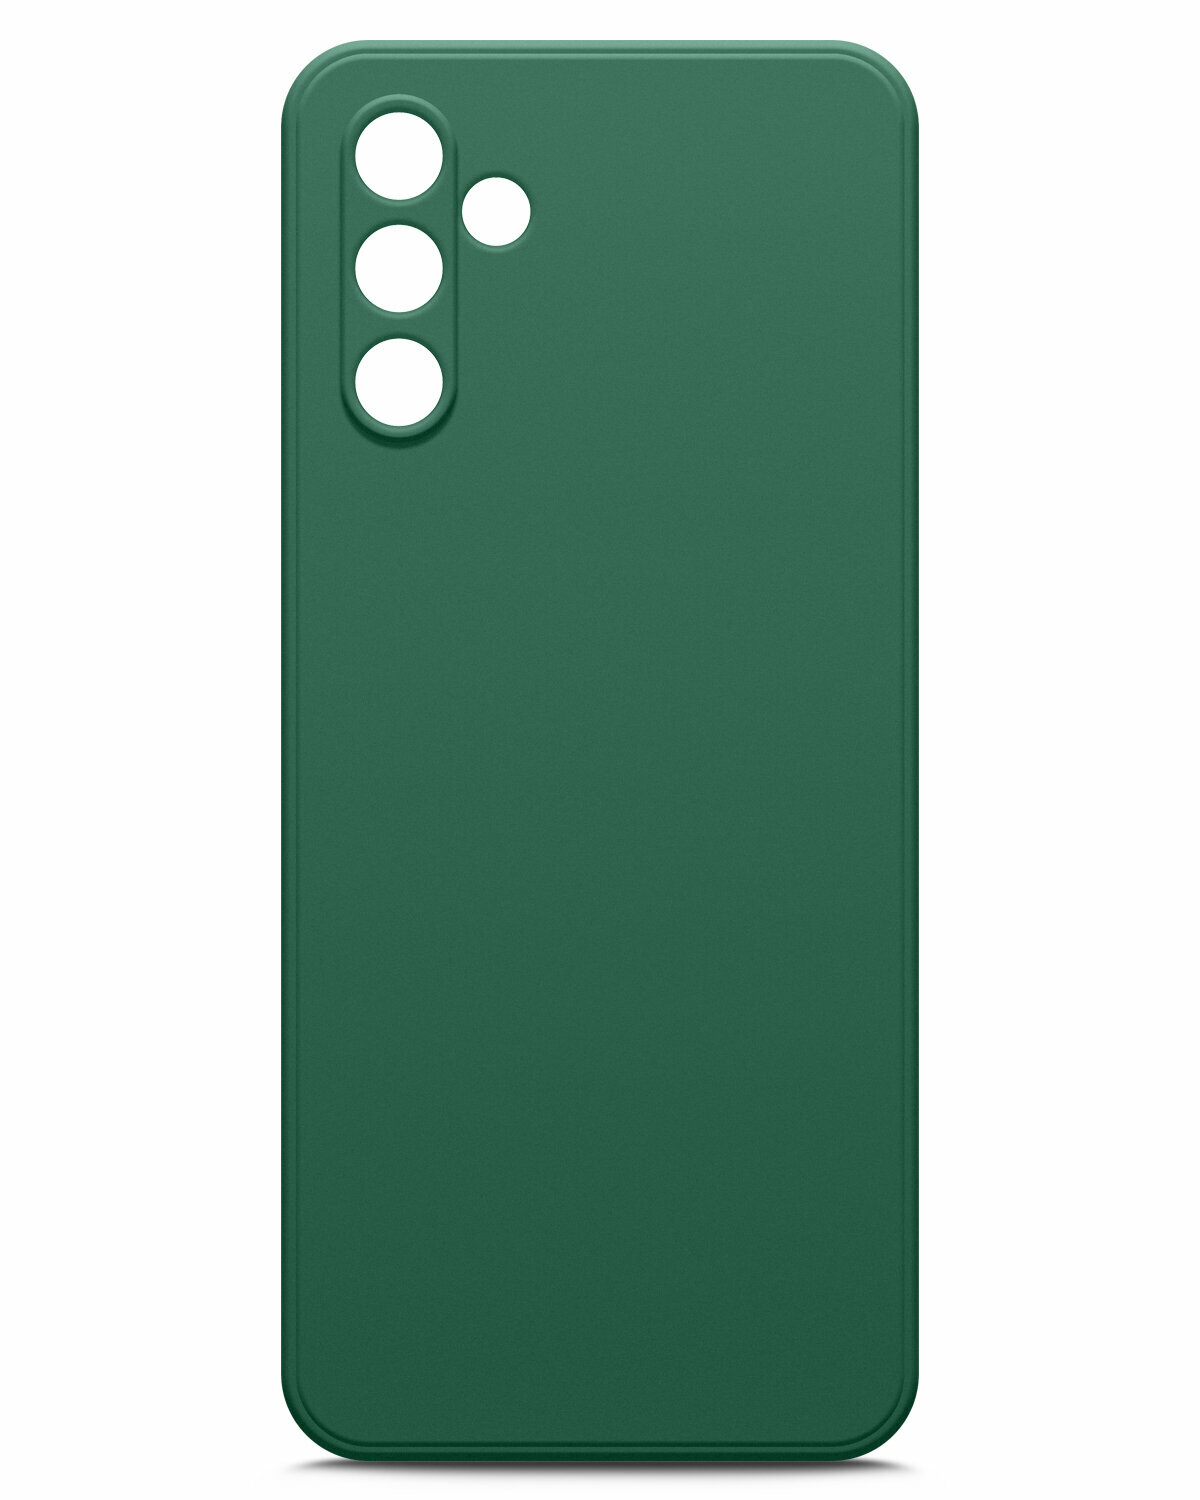 Чехол на Samsung Galaxy A04s (Самсунг Галакси А04с) зеленый опал силиконовый с защитной подкладкой из микрофибры Microfiber Case, Miuko